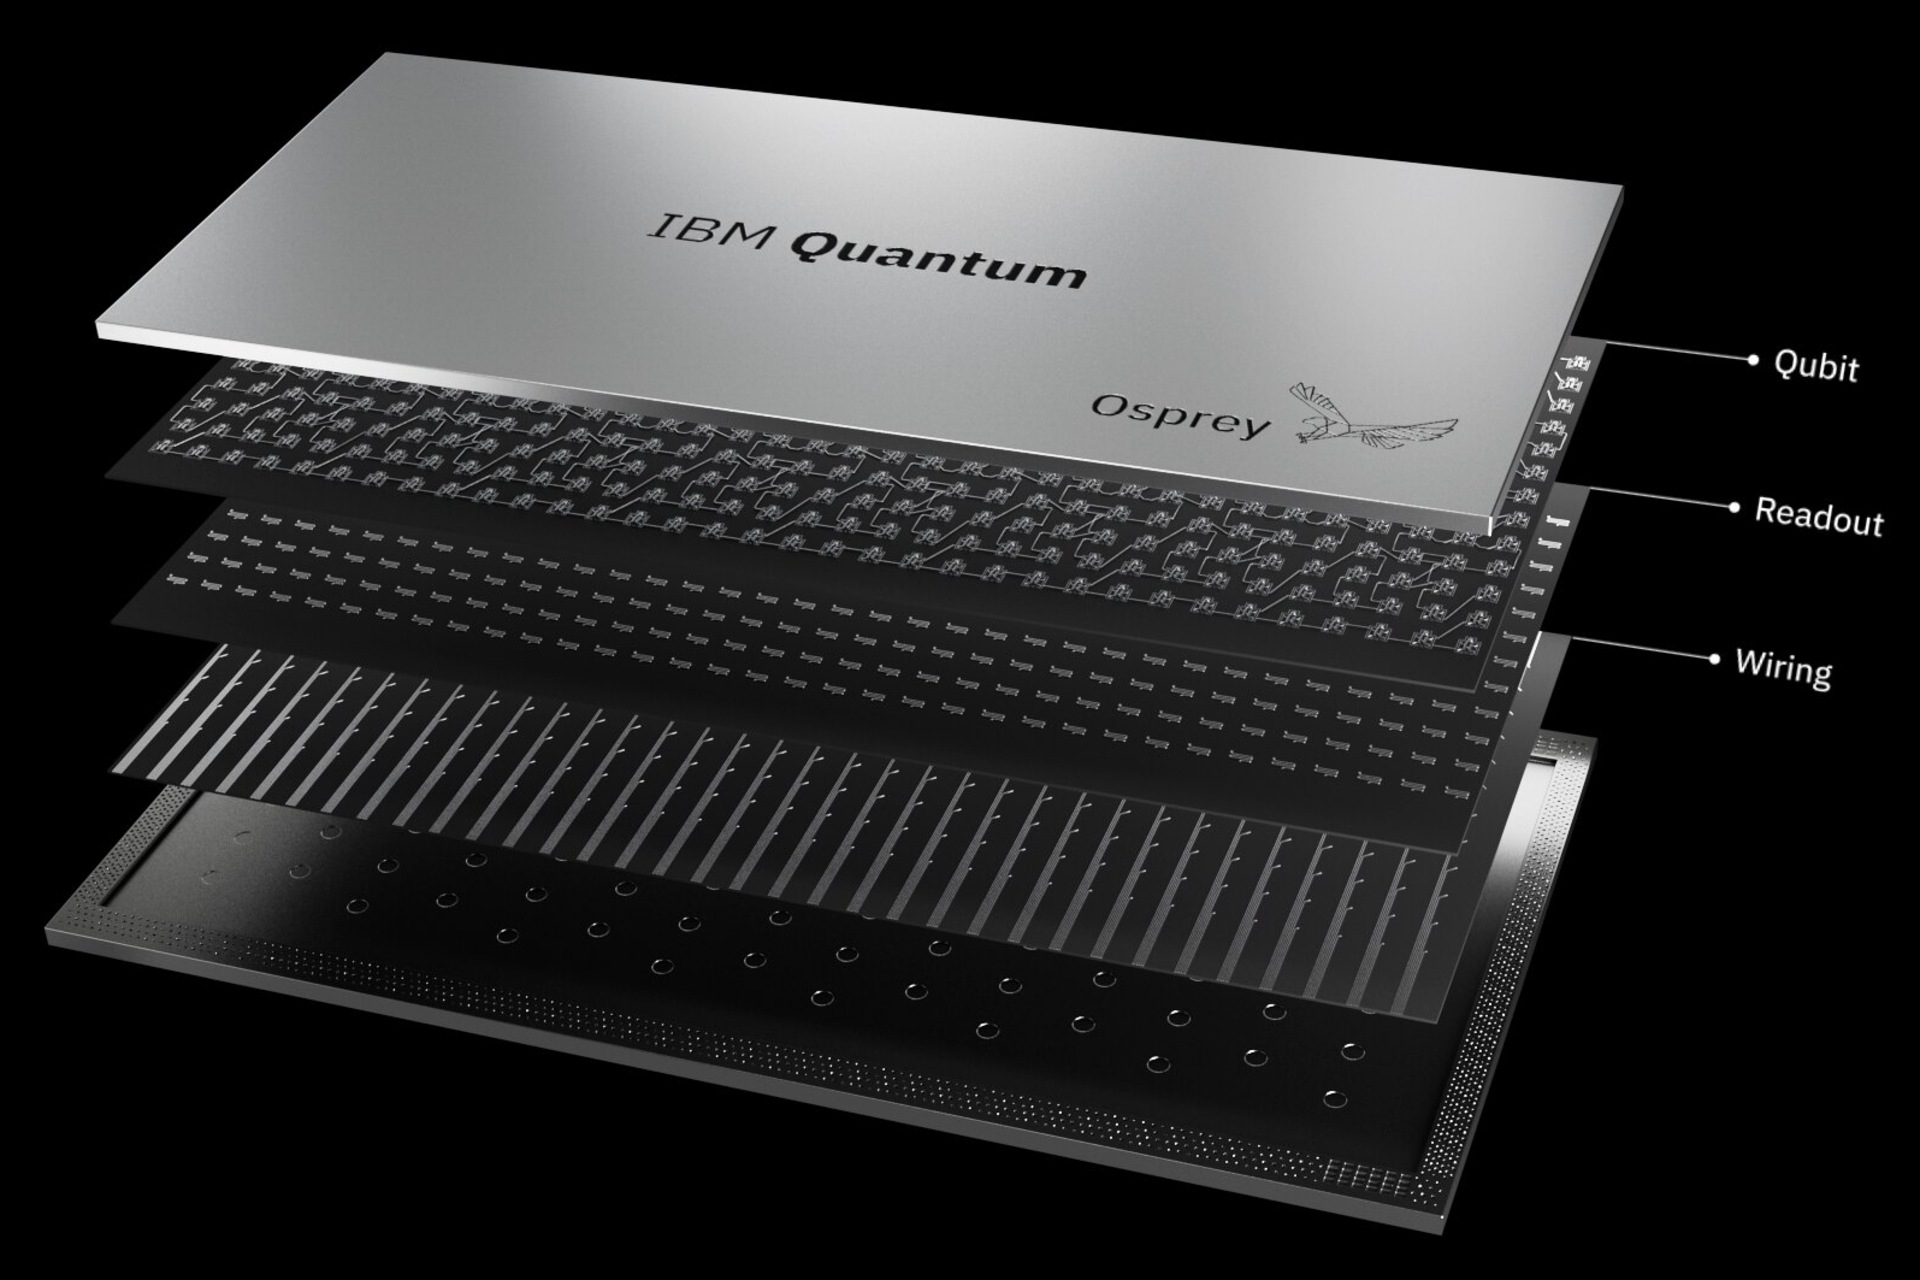 433 क्यूबिट आईबीएम "ऑस्प्रे" क्वांटम प्रोसेसर की प्रस्तुति